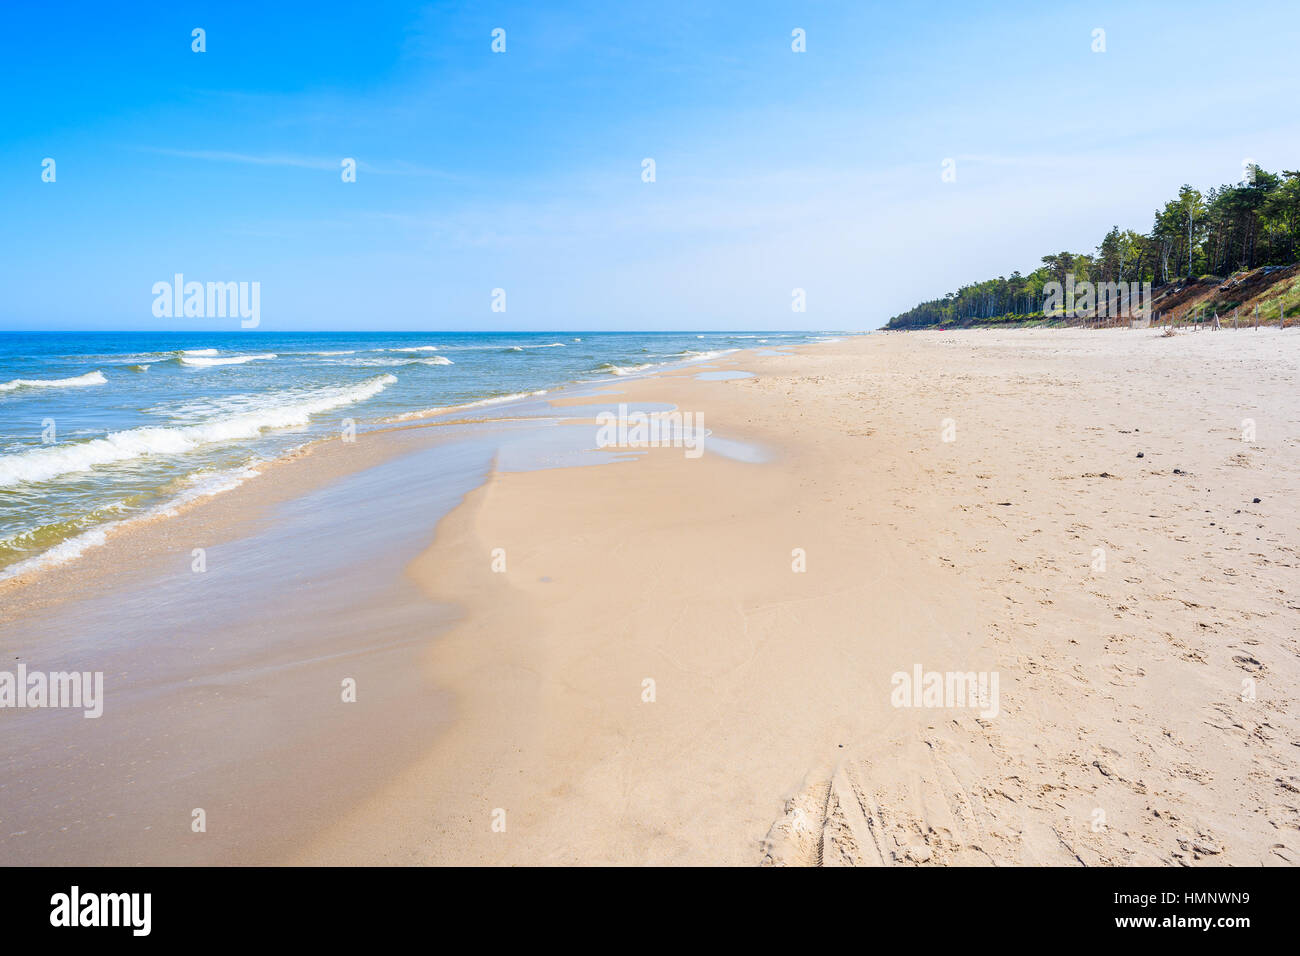 Très belle vue mer sur la plage de sable de Lubiatowo, mer Baltique, Pologne Banque D'Images